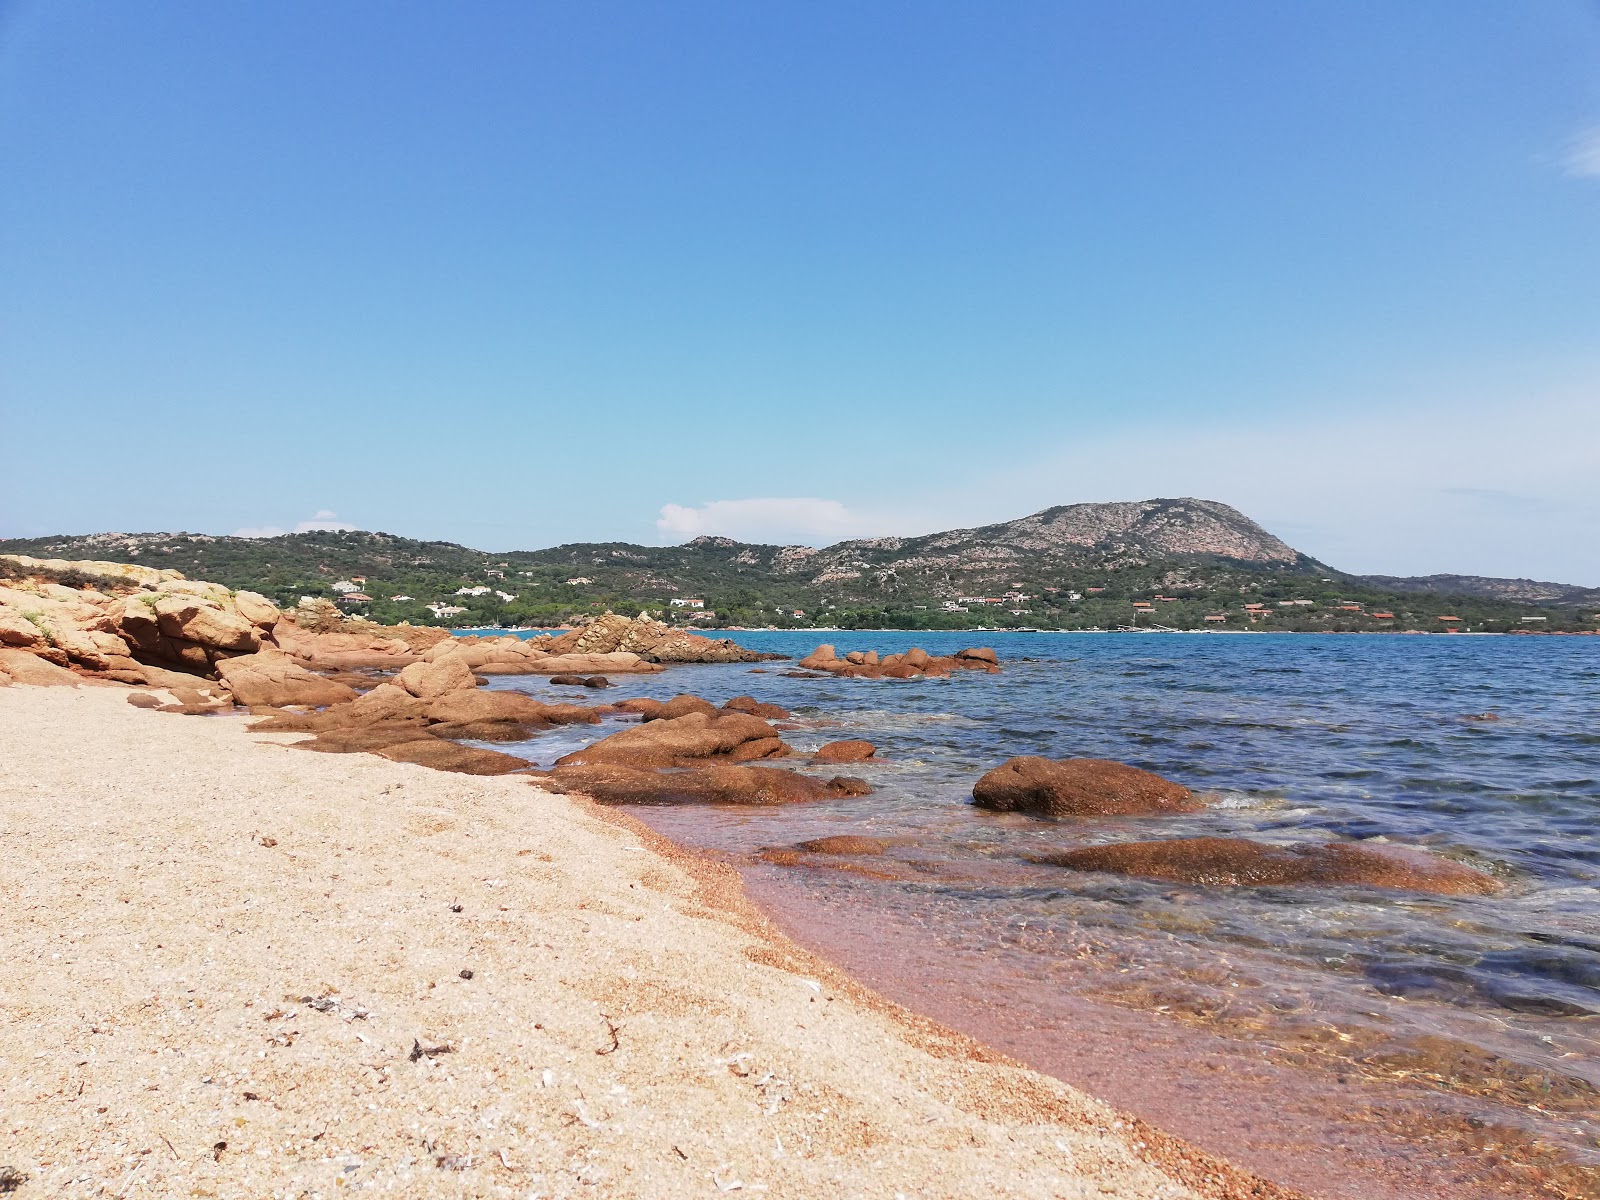 Zdjęcie Spiaggia piccola z powierzchnią brązowy piasek